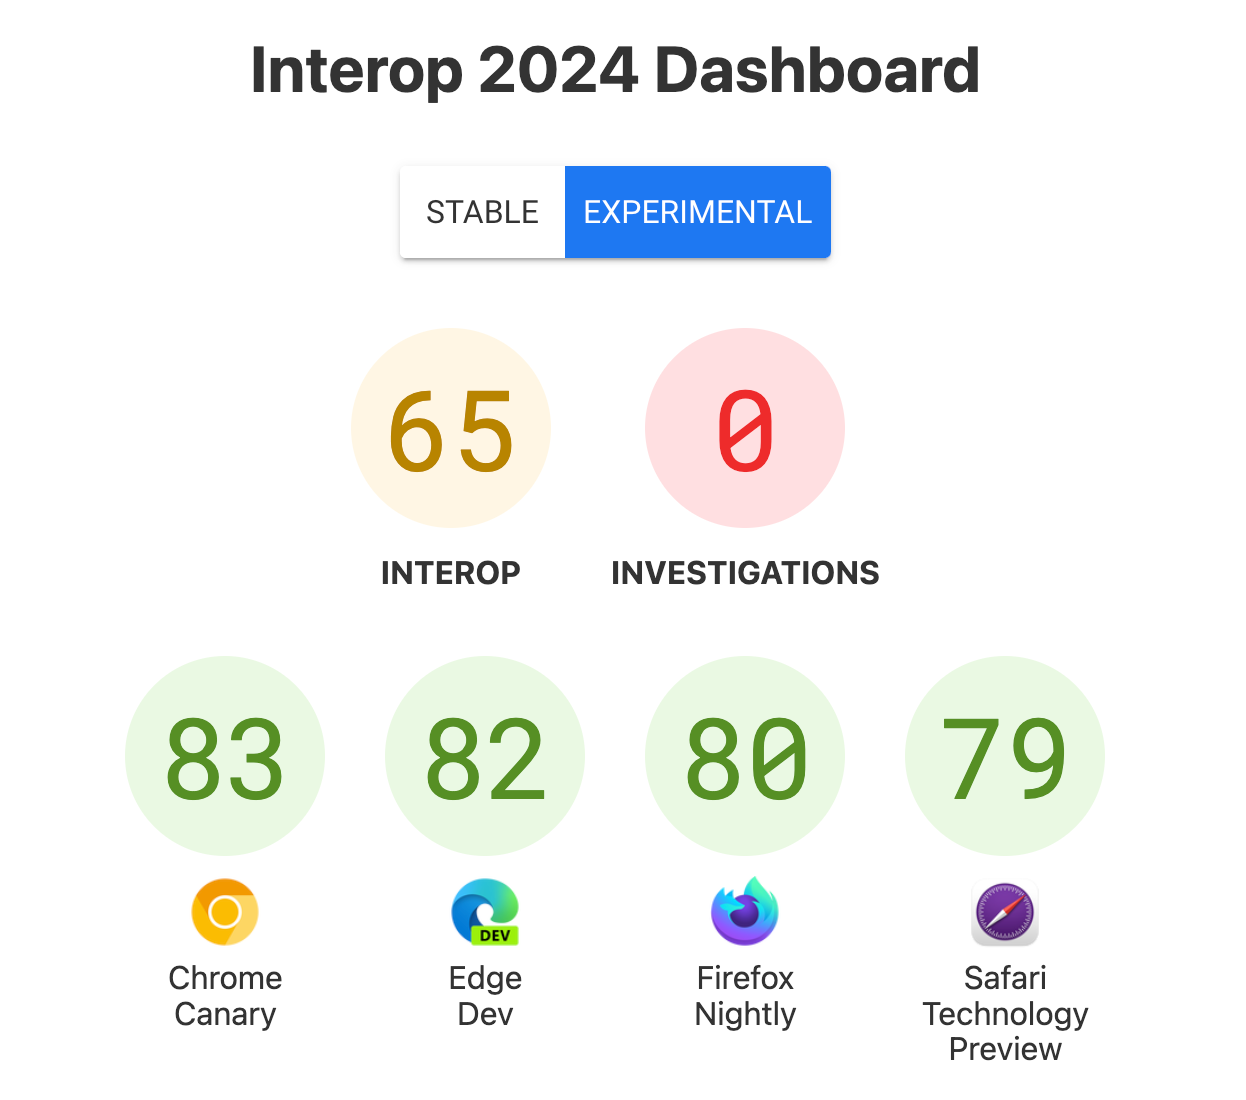 Captura de tela do painel com pontuações - Interoperabilidade: 65, Investigações: 0, Chrome Canary: 83, Edge Dev: 82, Firefox Nightly: 80, Safari Technology Preview: 79.